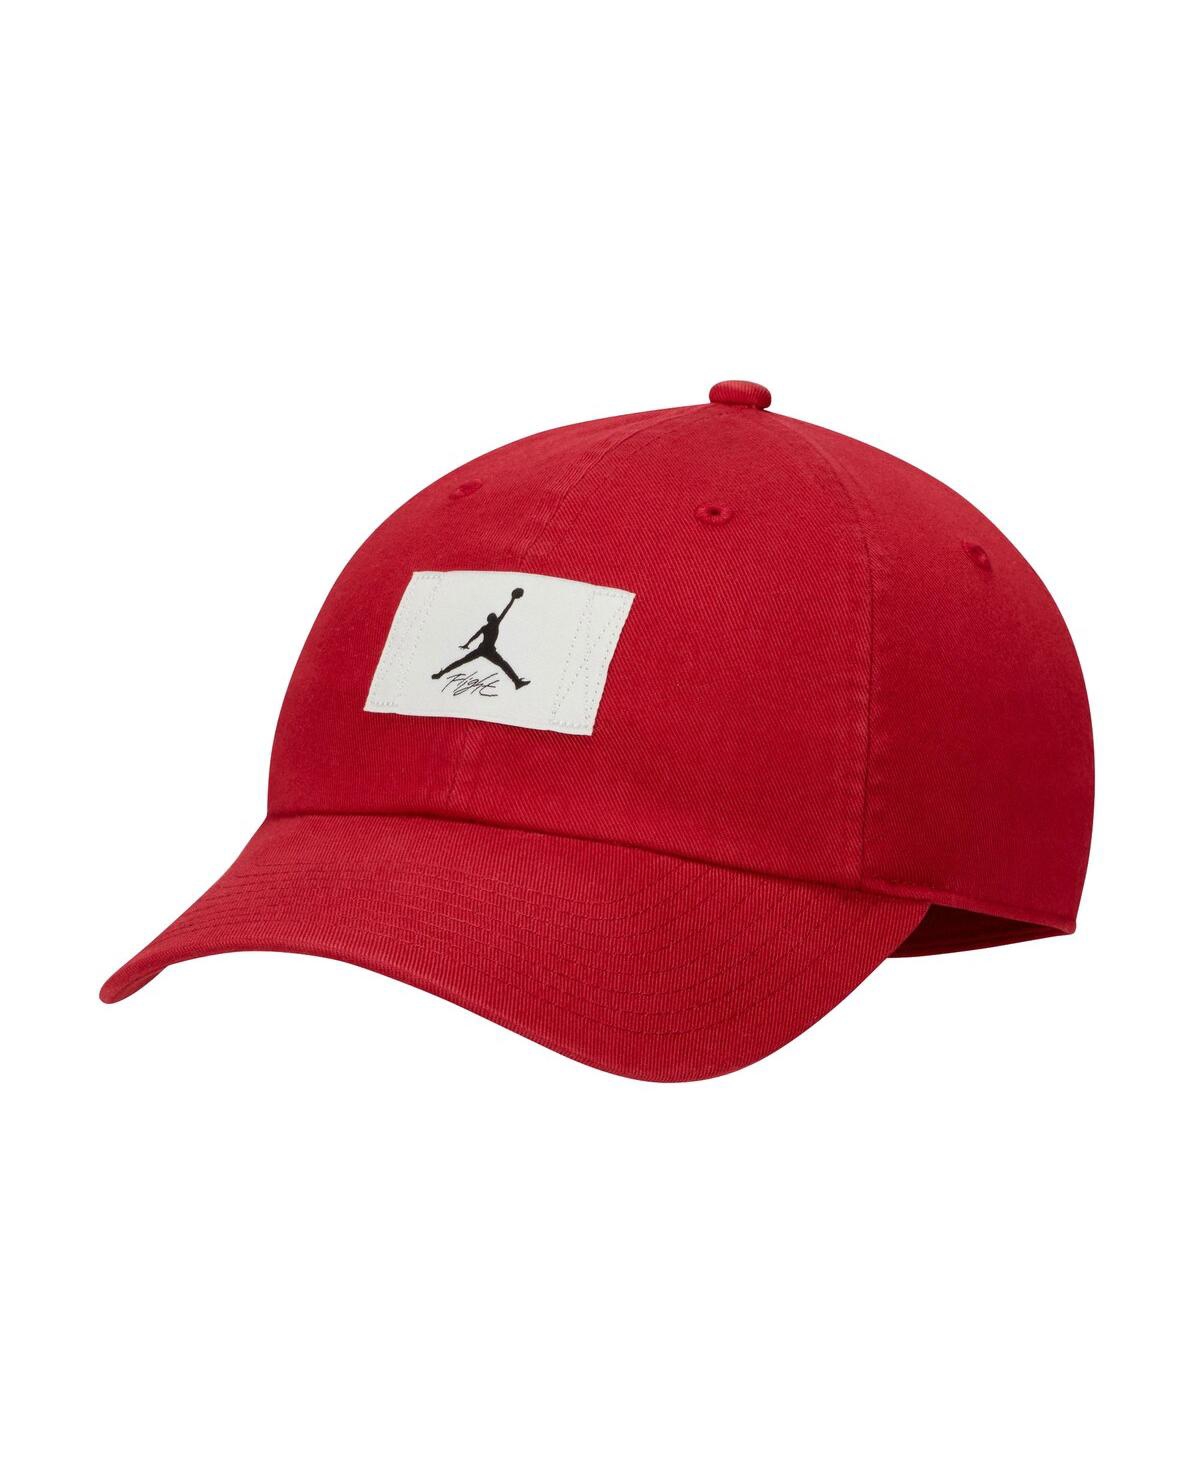 Men's and Women's Jordan Logo Adjustable Hat - Red